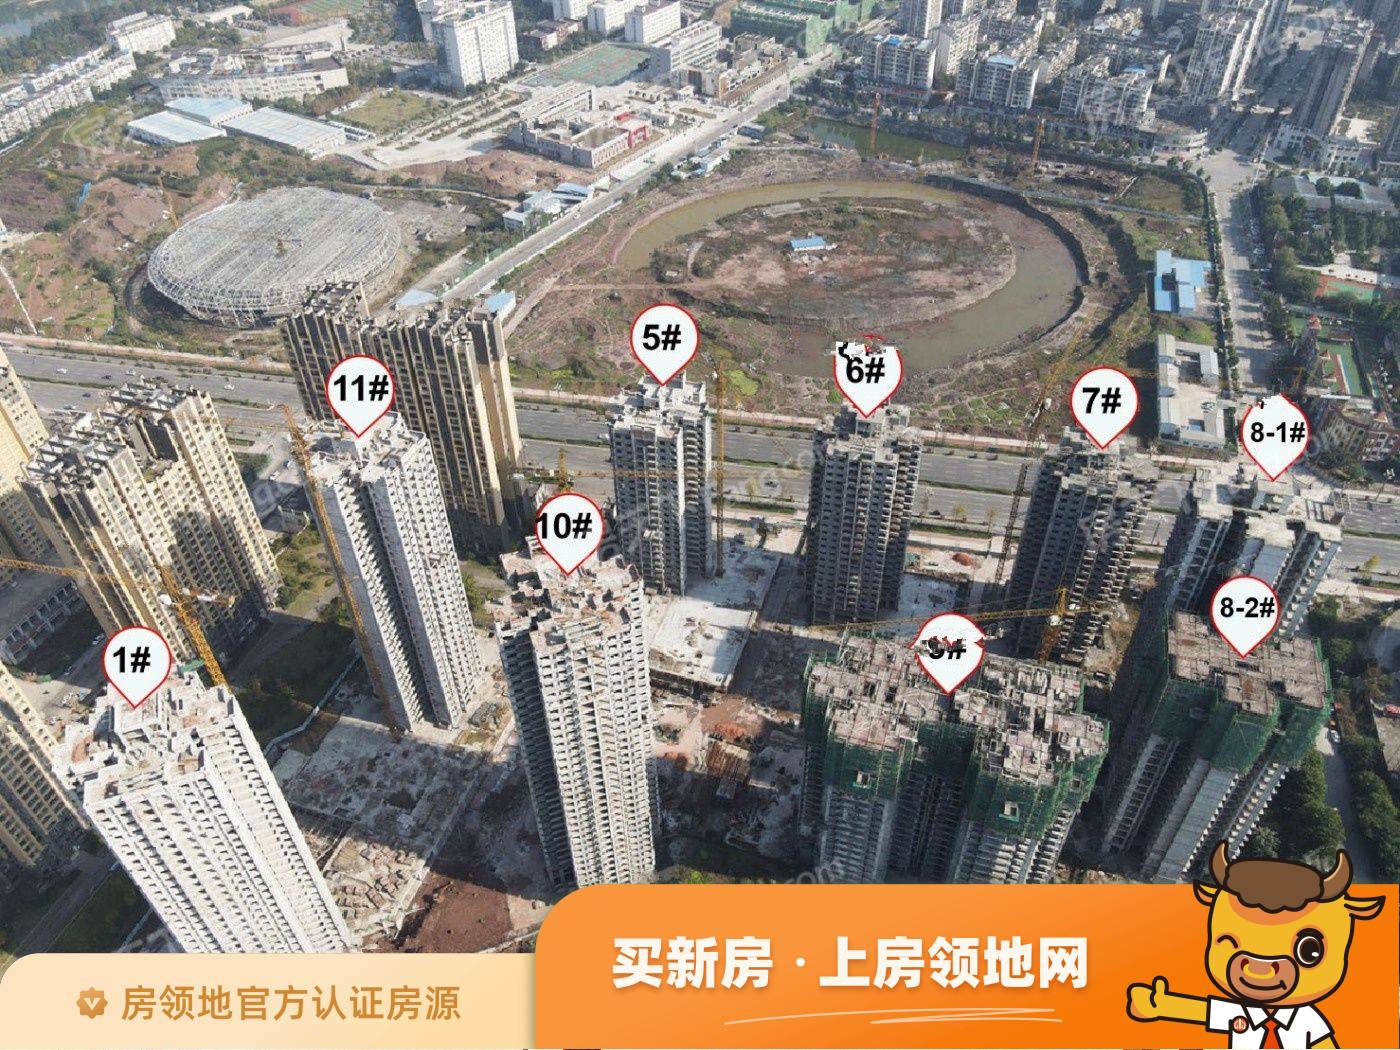 锦绣山河低碳智慧新城实景图17